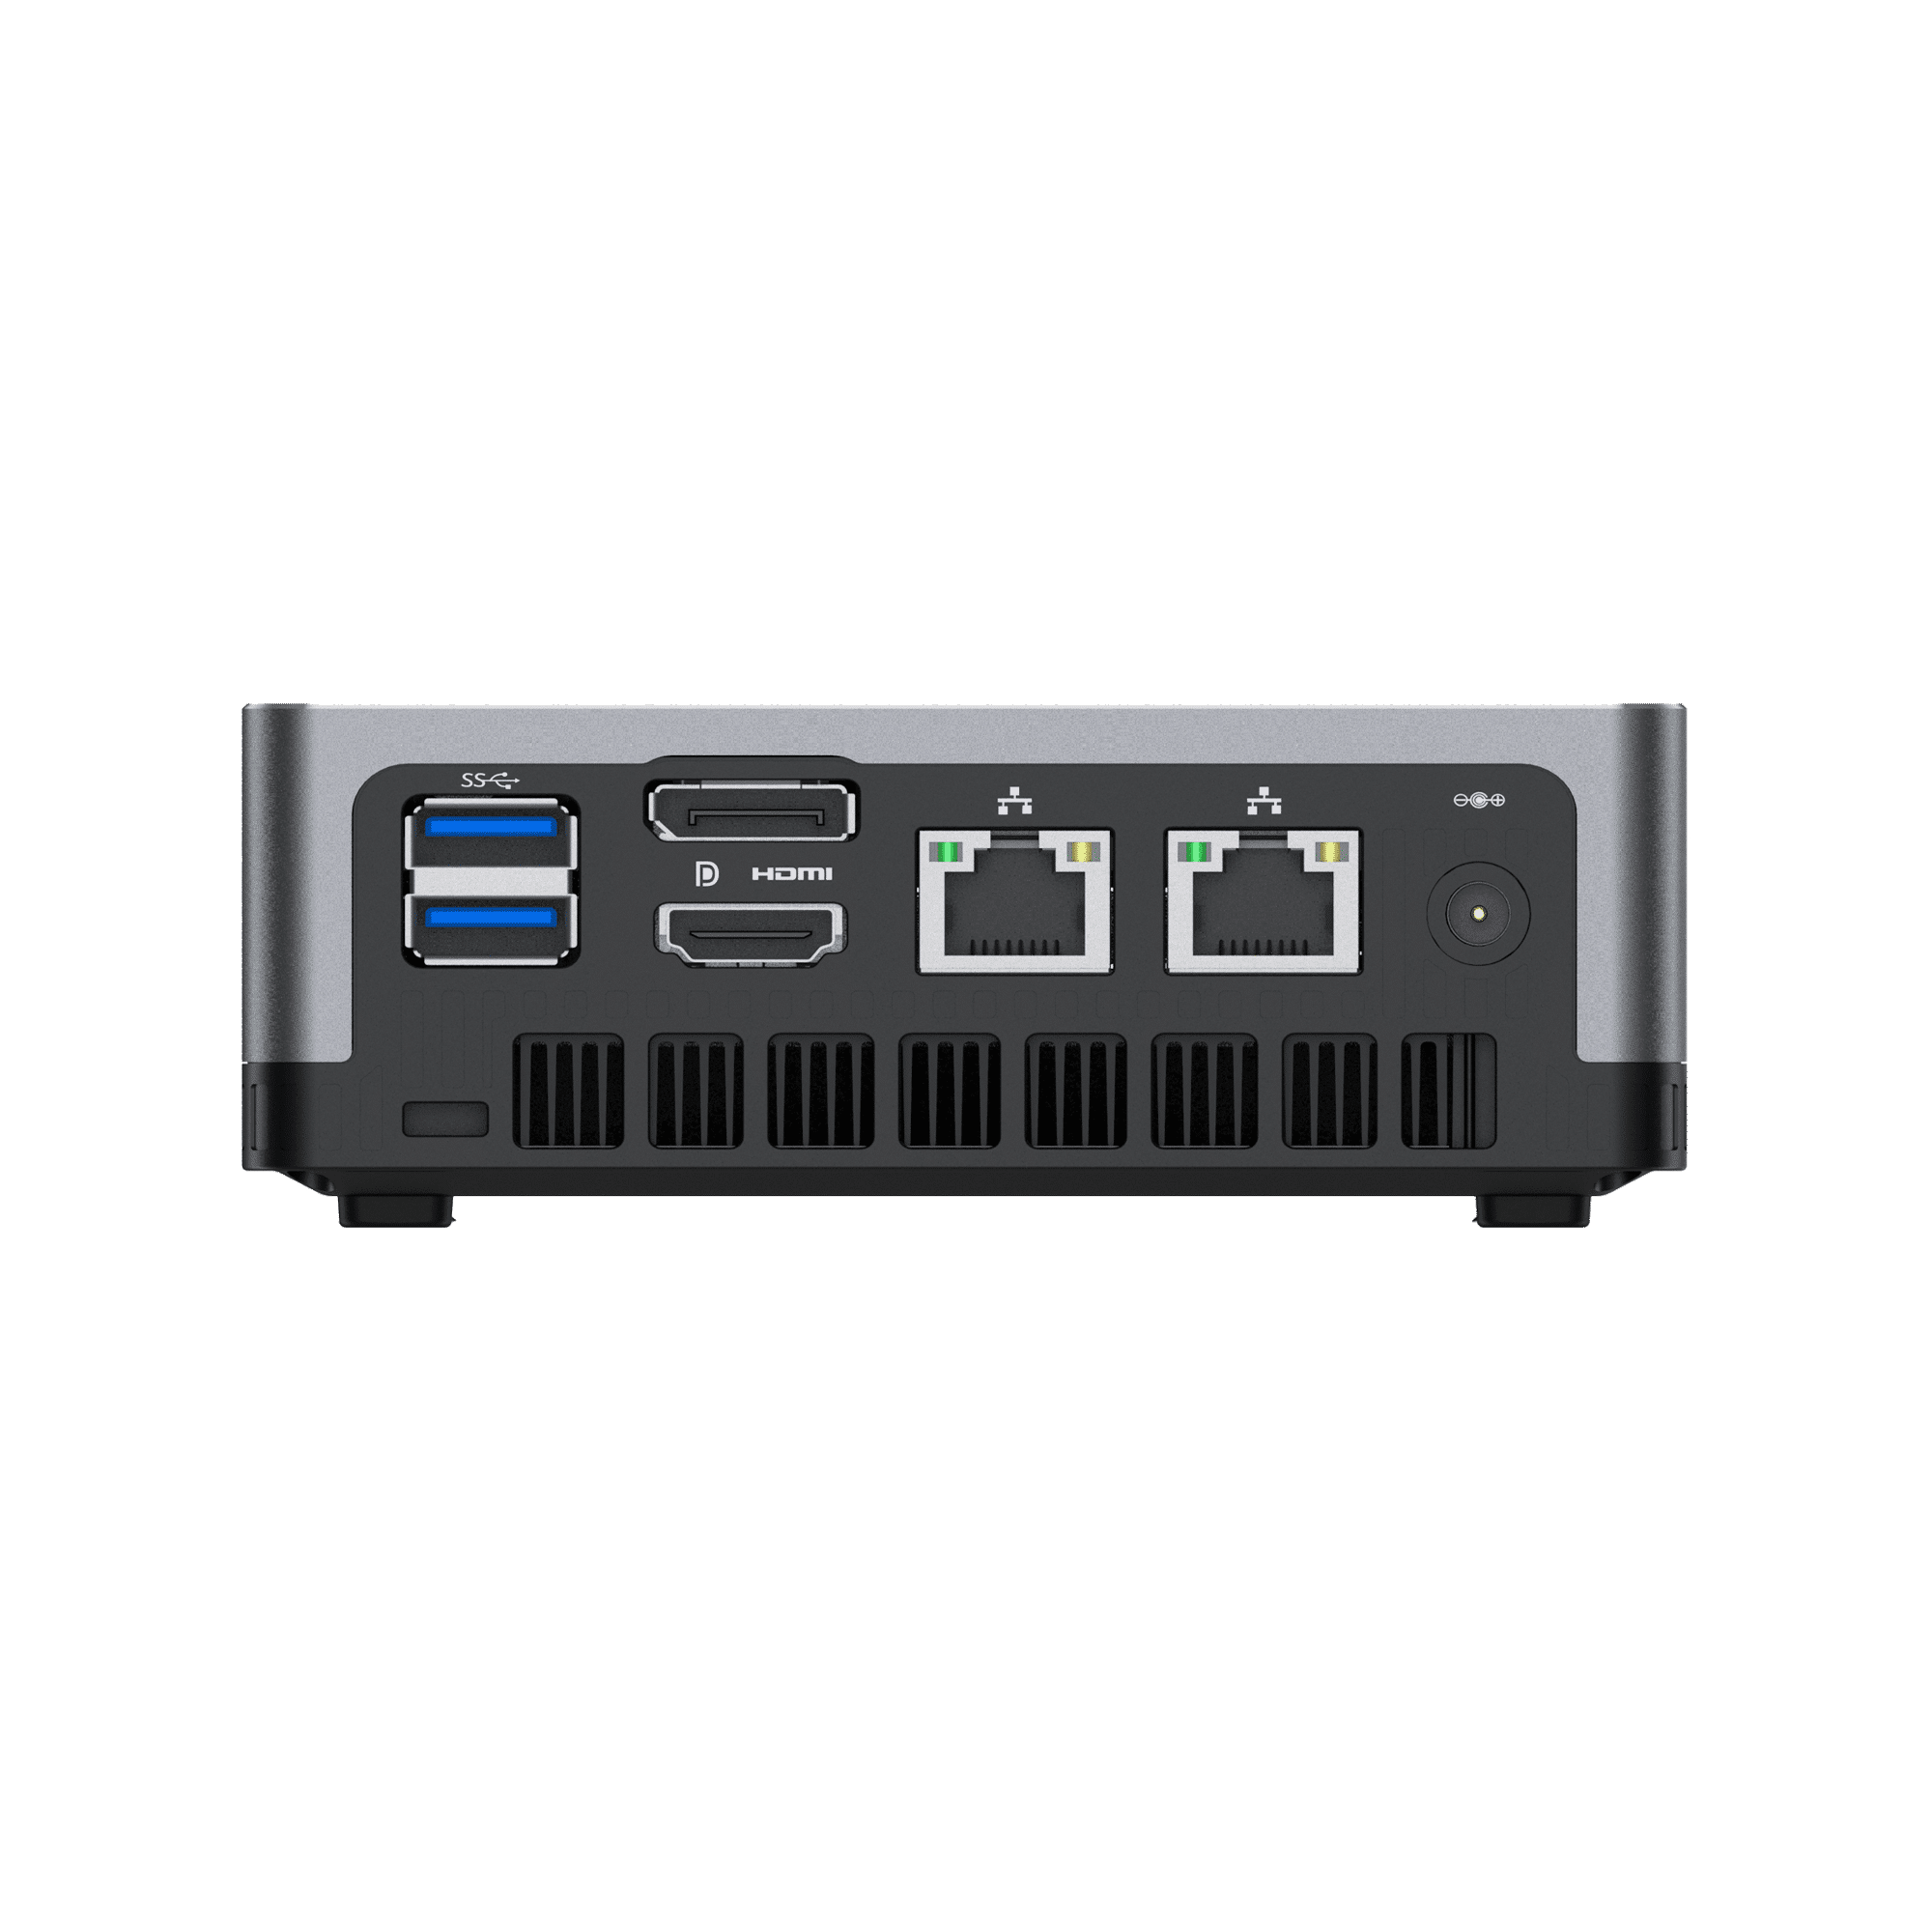 MinisForum EliteMini UM700 - Zeigt die rückwärtigen Anschlüsse: 2x USB Typ-A 3.0, 1x HDMI, 1x DisplayPort, 2x RJ45 Ethernet Ports und Power Port